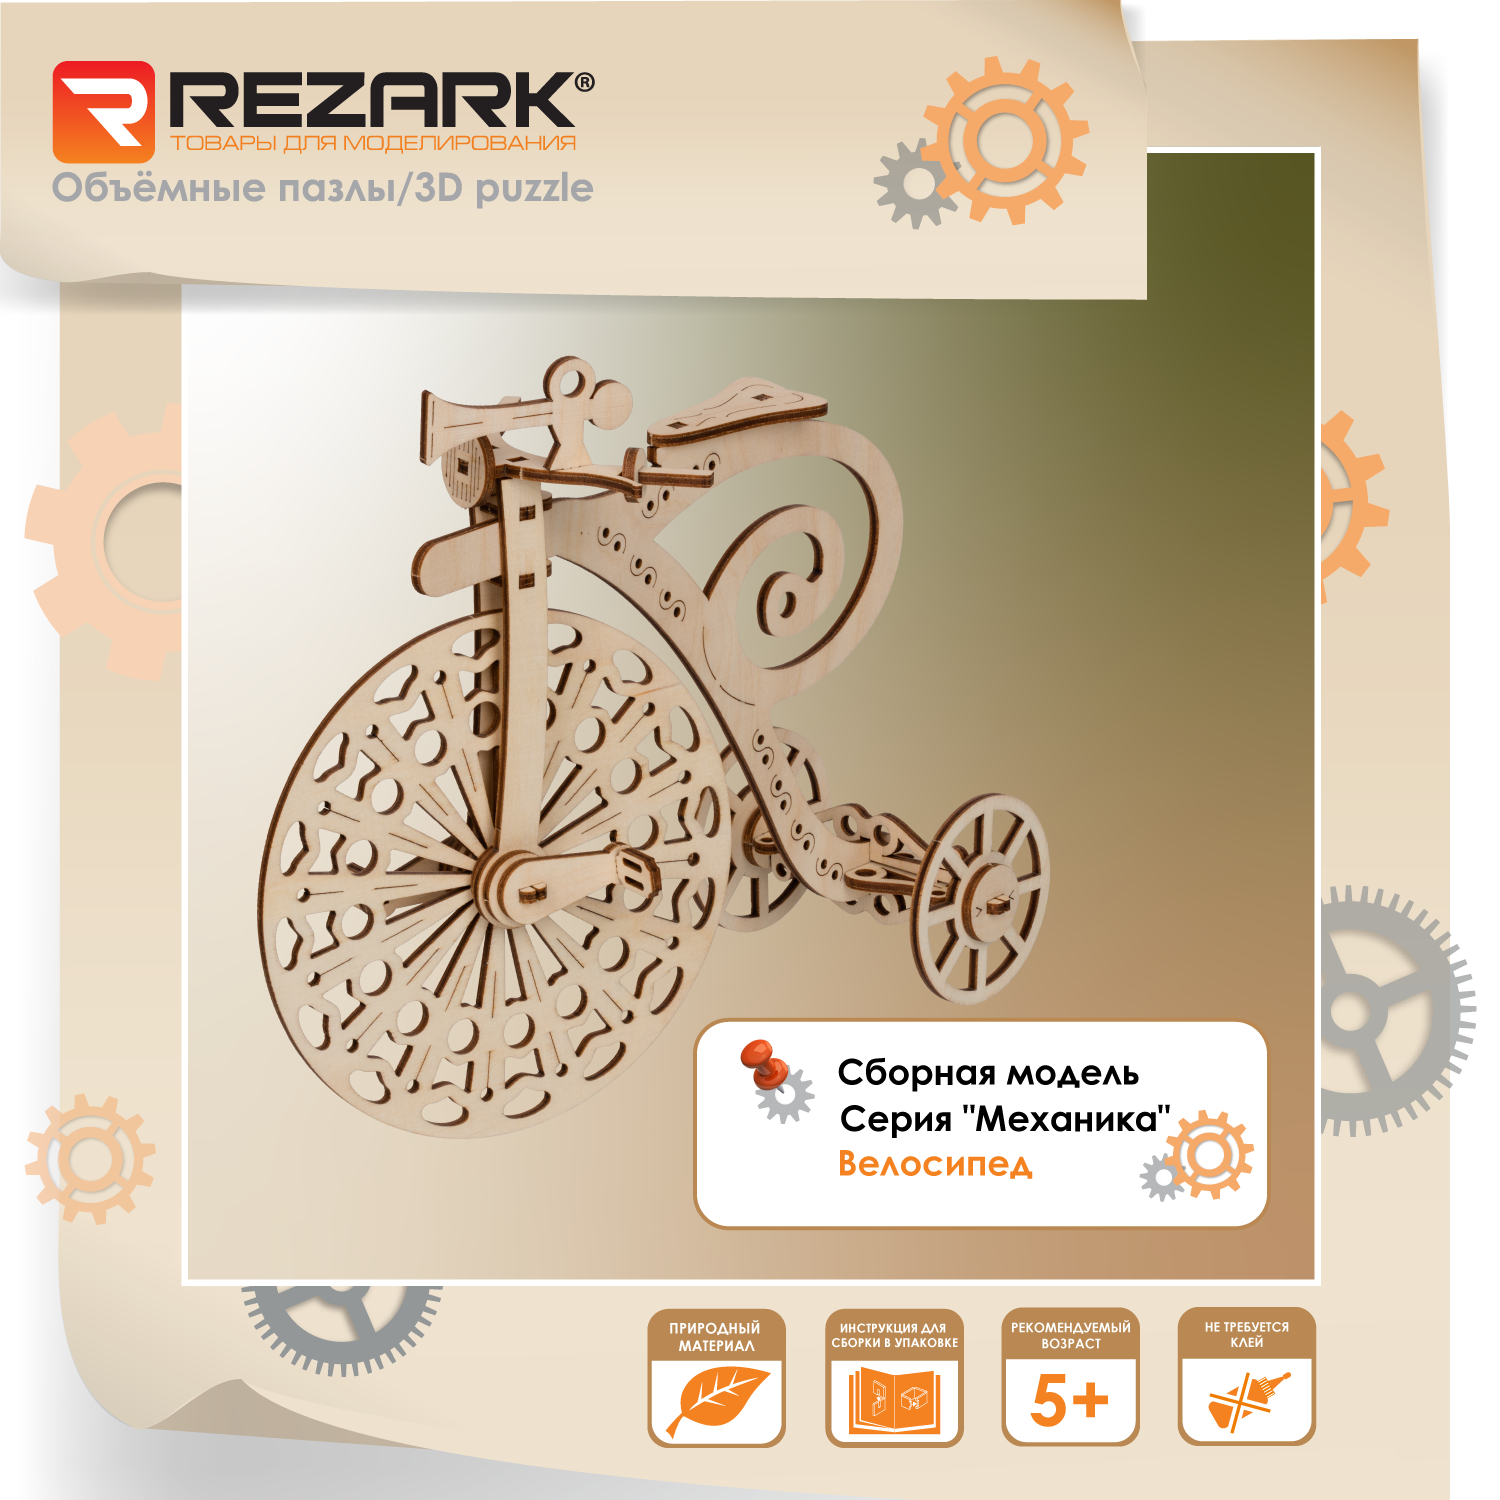 Сборная модель REZARK MGR-5 Серия "Механика" Велосипед